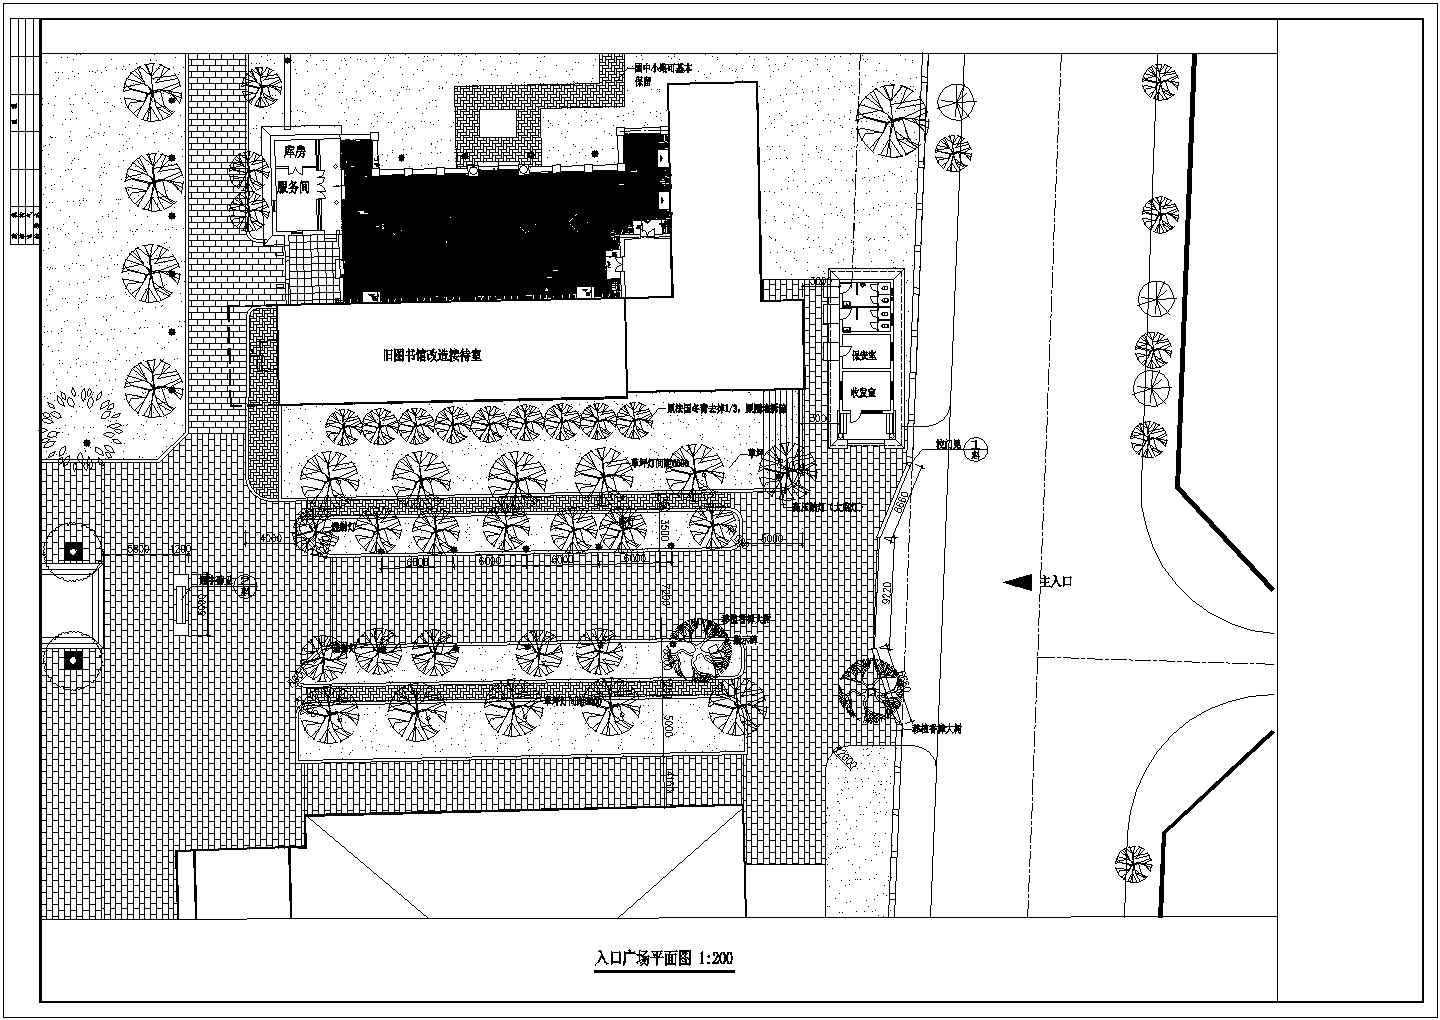 公园广场绿化CAD图纸-入口设计